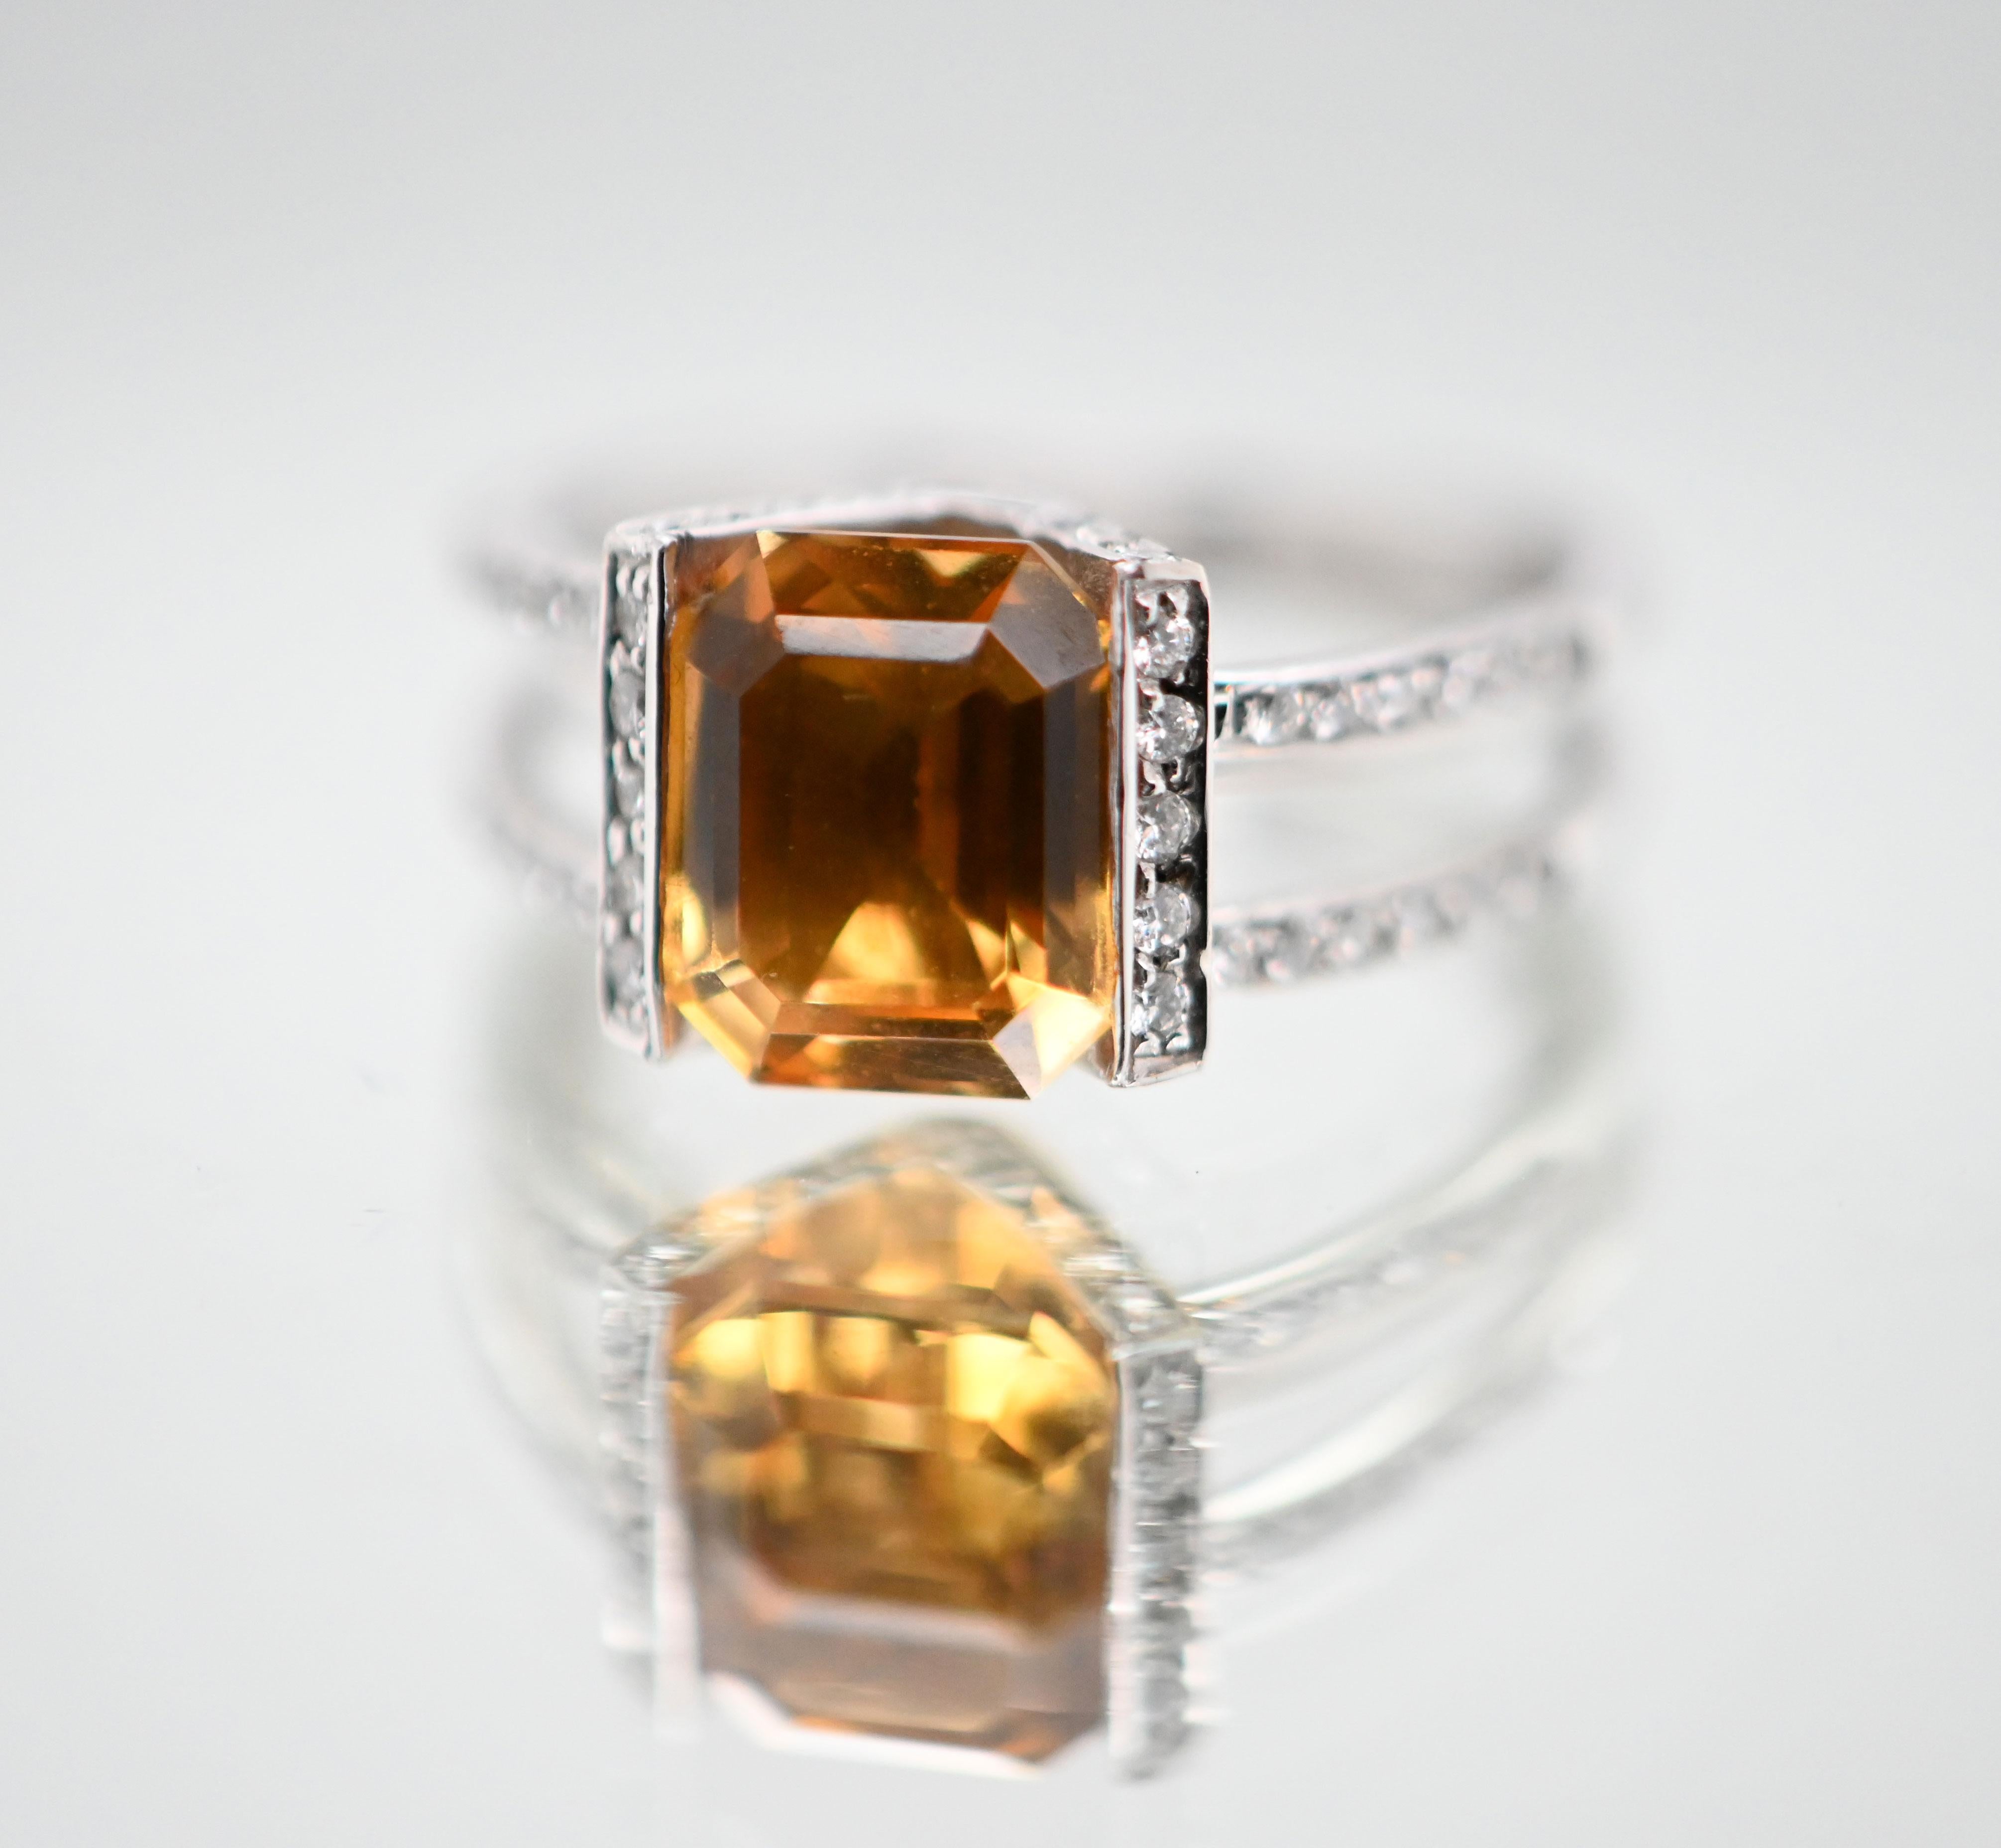 Découvrez cette superbe bague en or blanc 18 carats, ornée d'une citrine de forme émeraude entourée de diamants étincelants. Avec son design délicat et ses finitions soignées, cette bague incarne l'élégance et la sophistication.

Le centre de cette